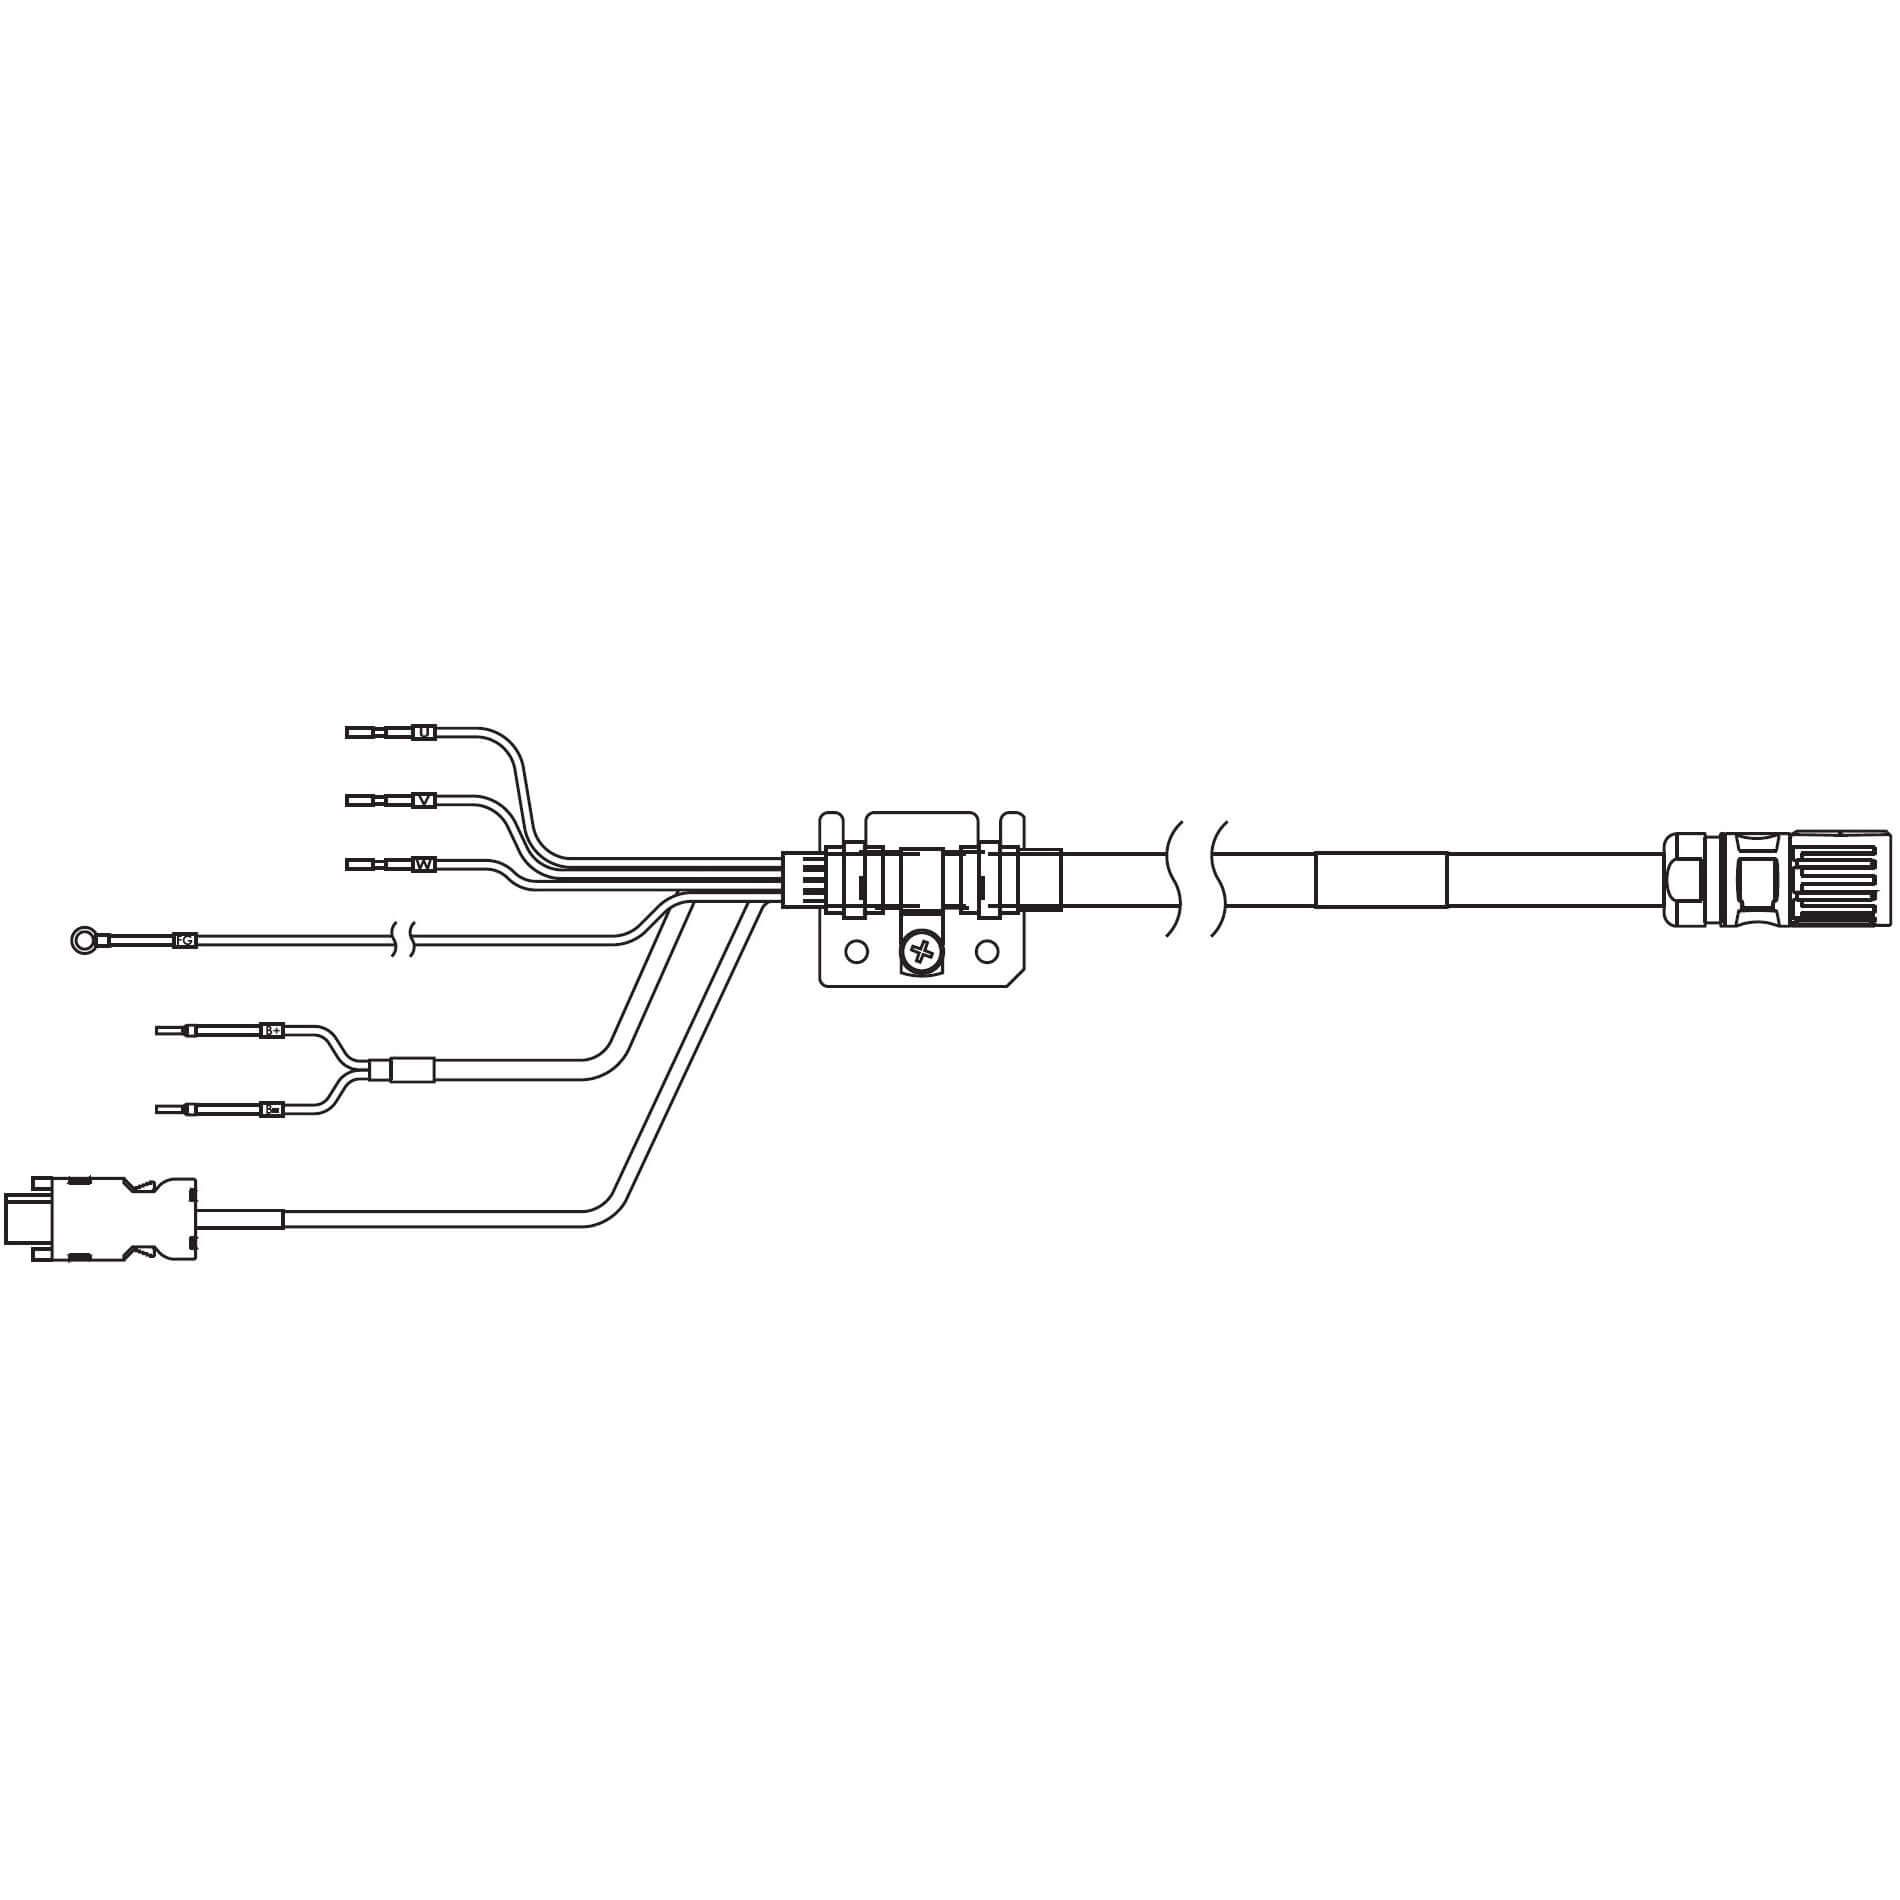 1S-Servomotor mit Safe Motion, Integrierte Kabel R88A-CX1C003SF